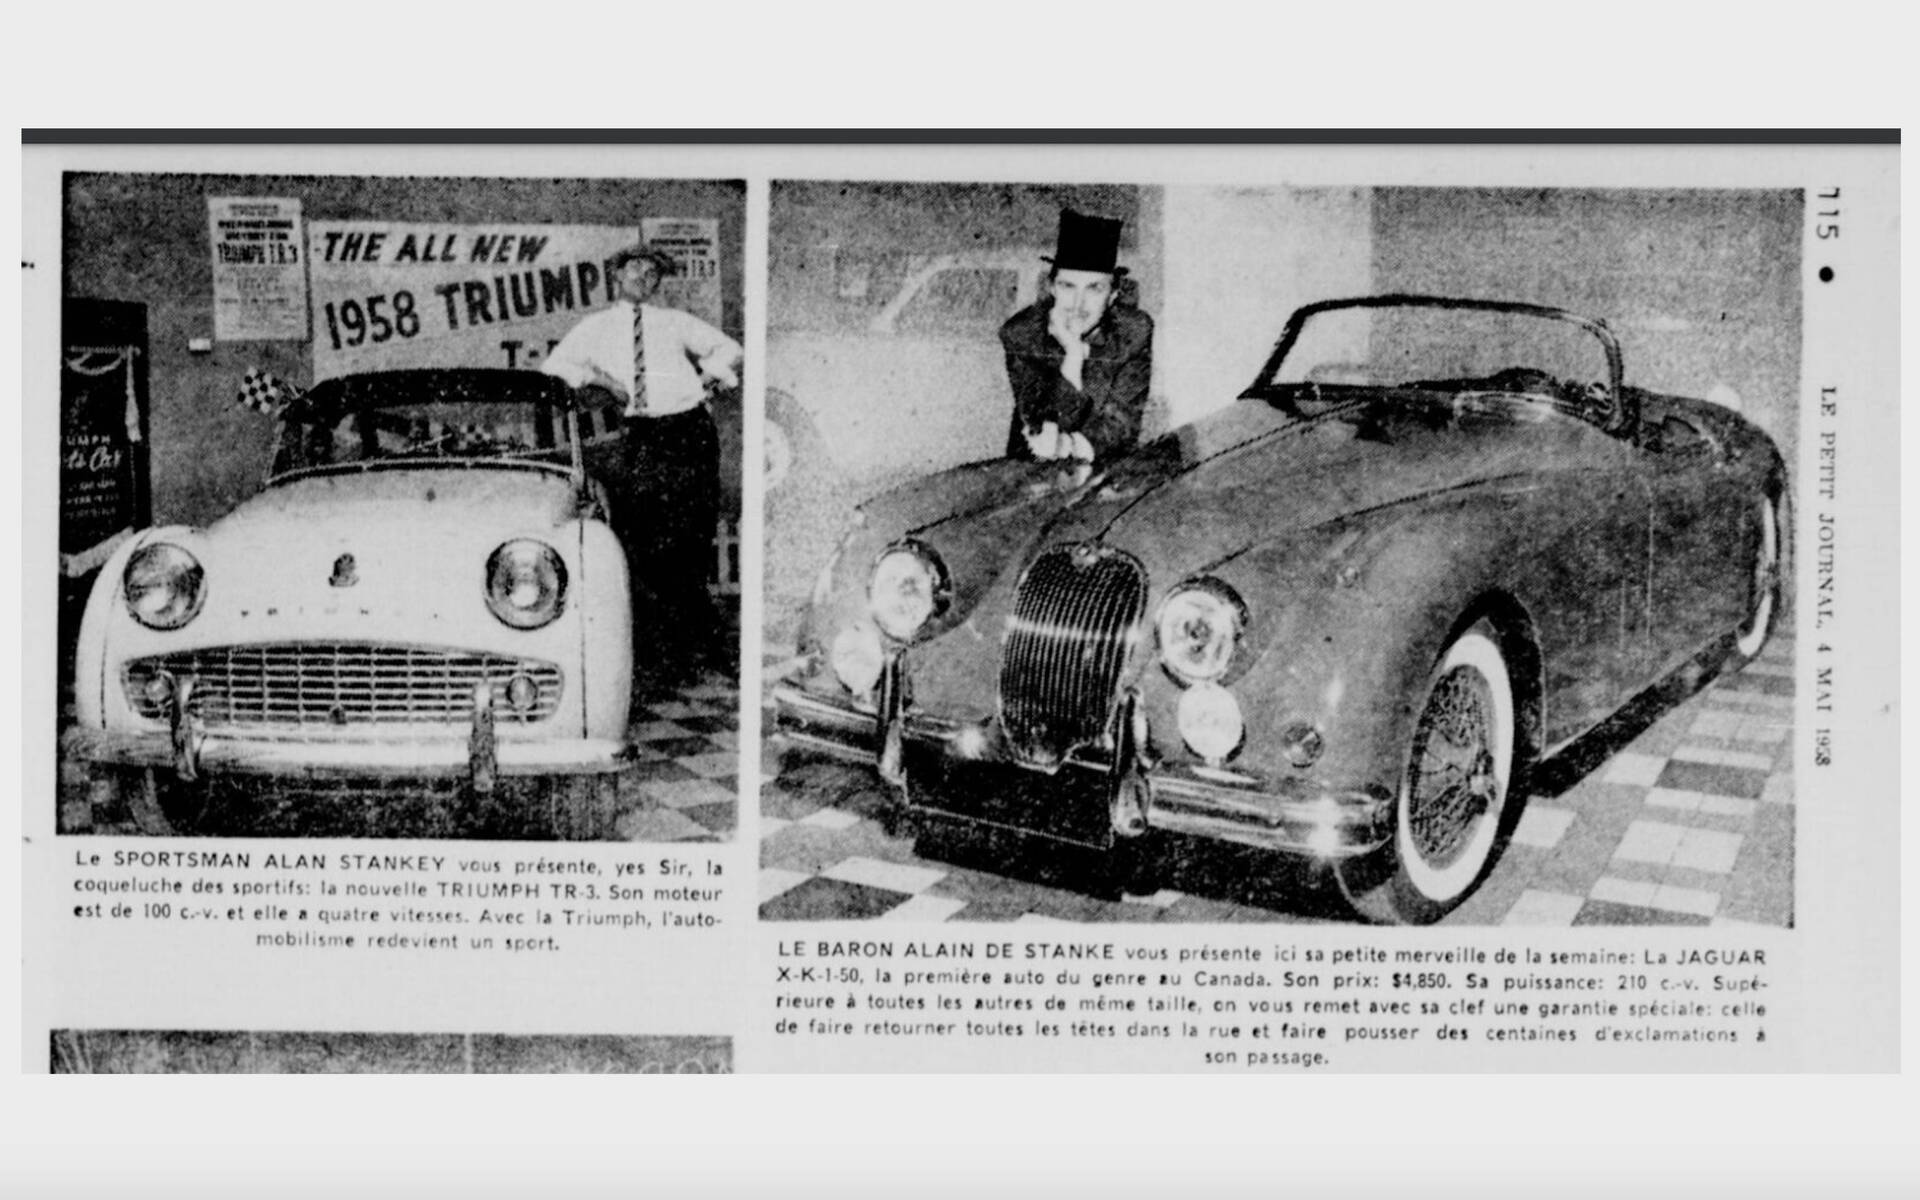 <p>Salon de l’auto anglaise 1958 à l’hôtel Queen Elizabeth</p>